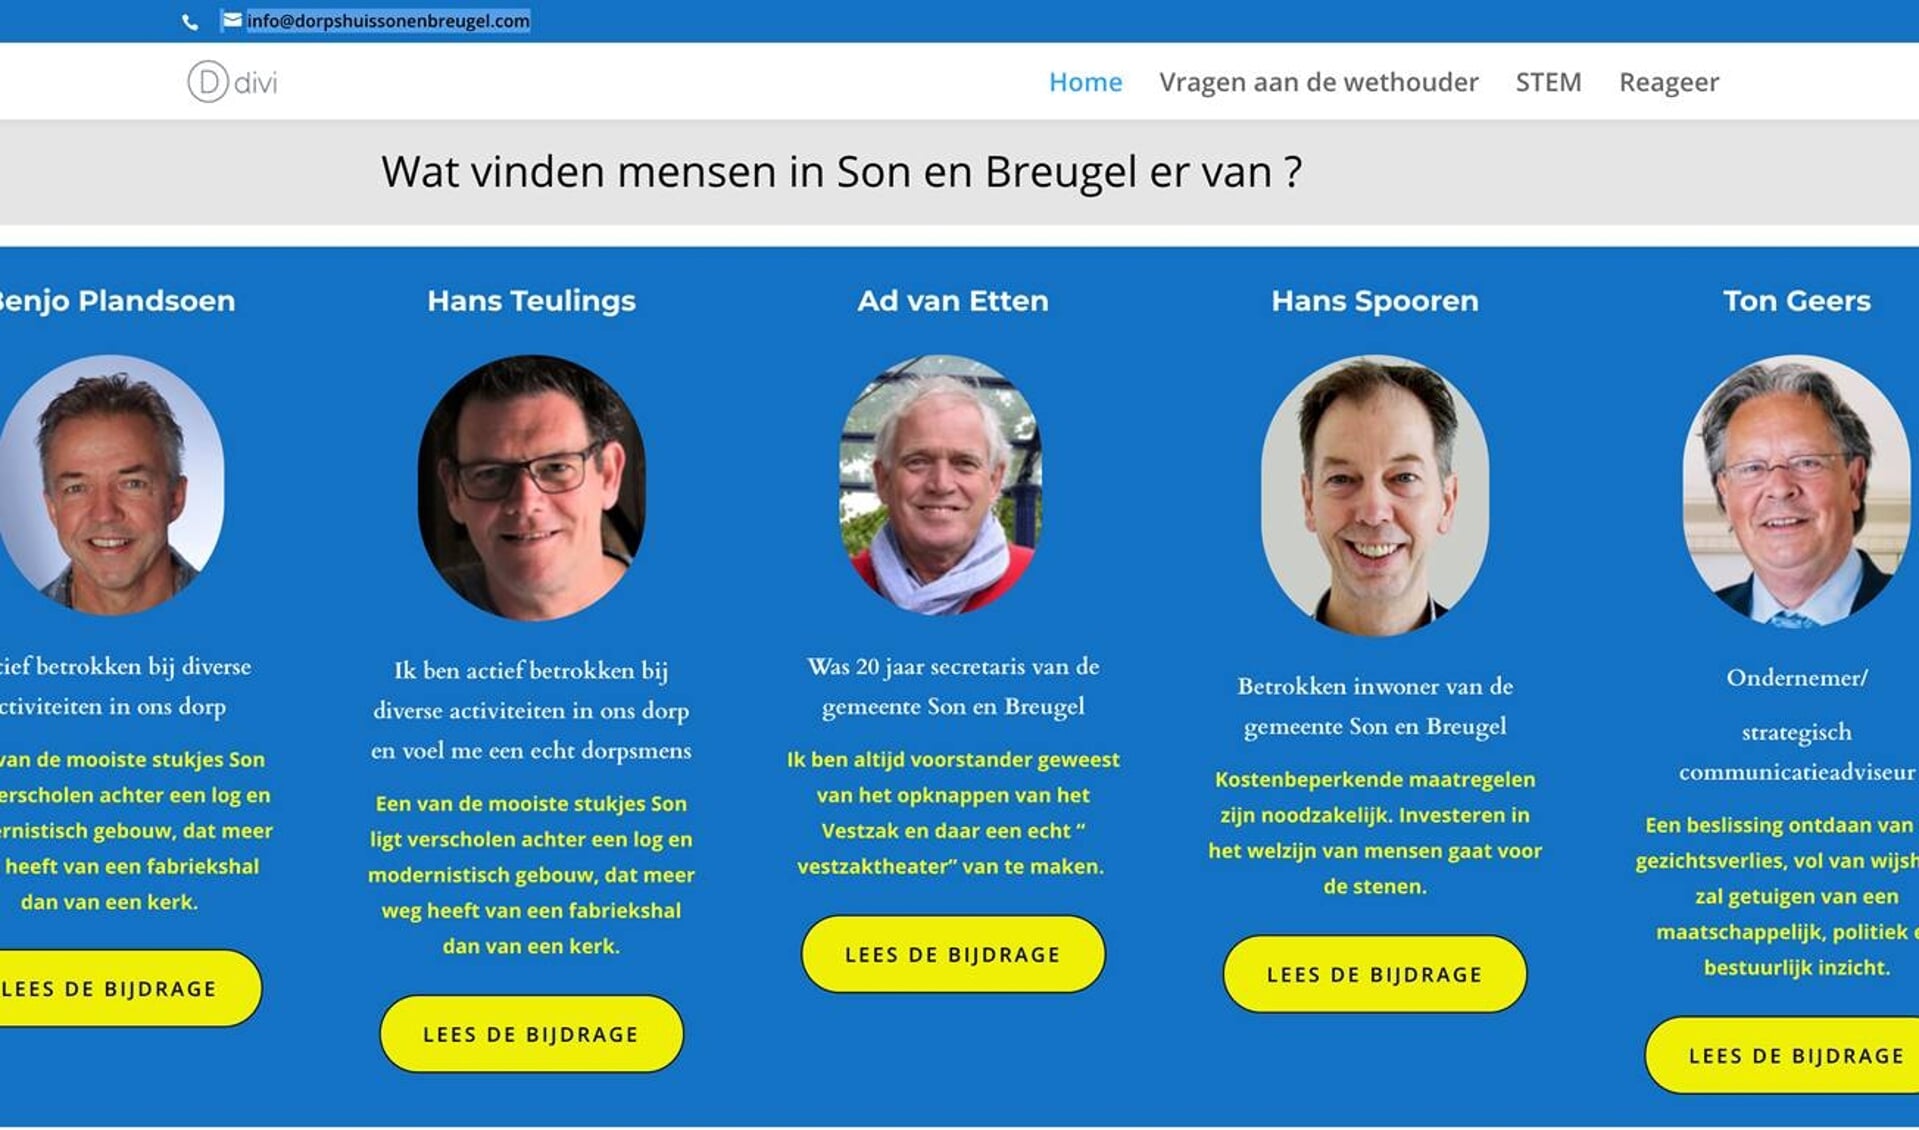 Screenshot van website 'Dorpshuis Son en Breugel; verantwoorde investering of prestigeobject?'